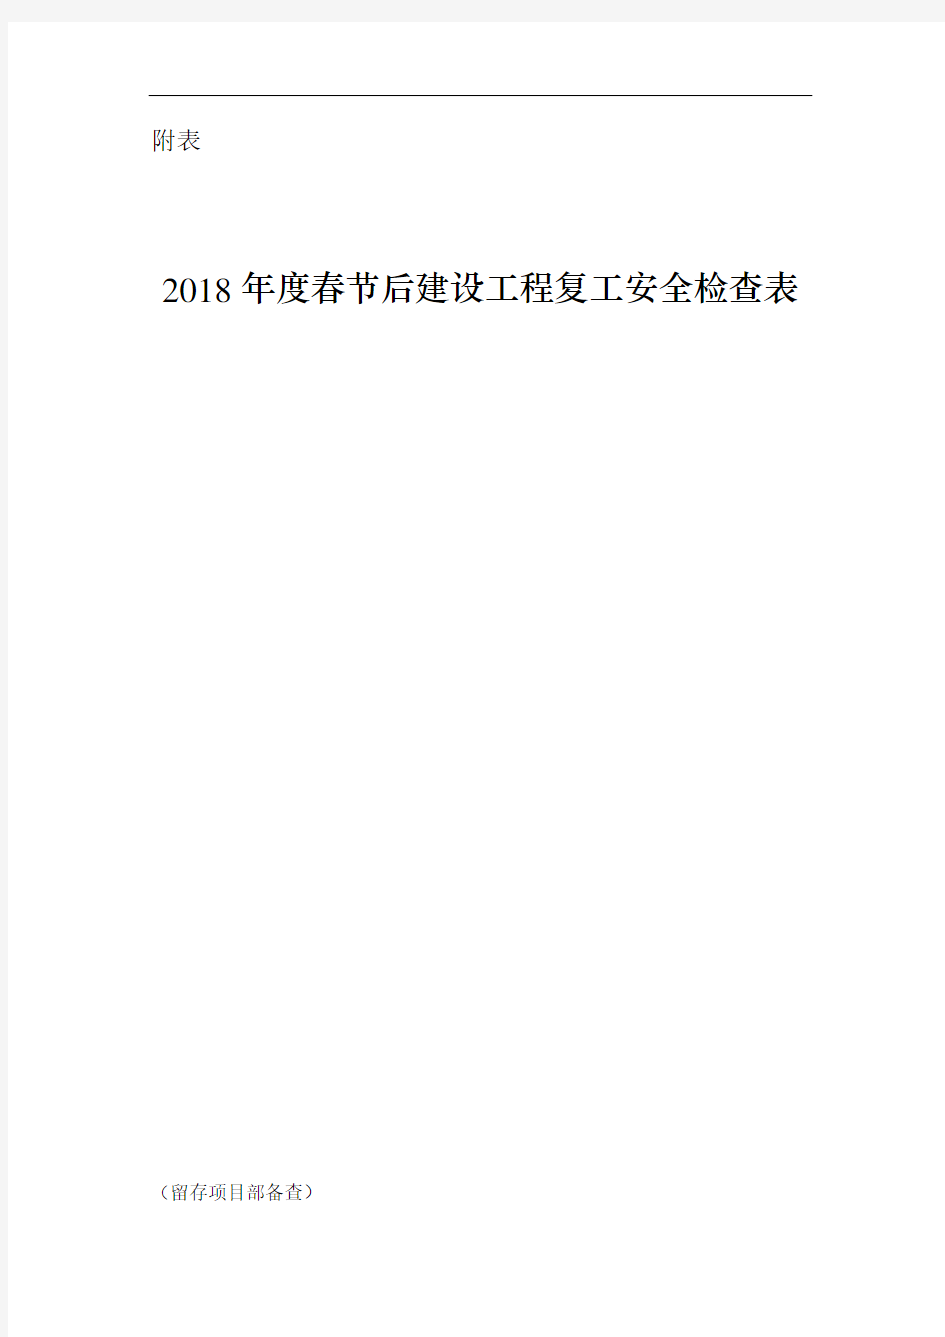 2018年度春节后建设工程复工安全检查表